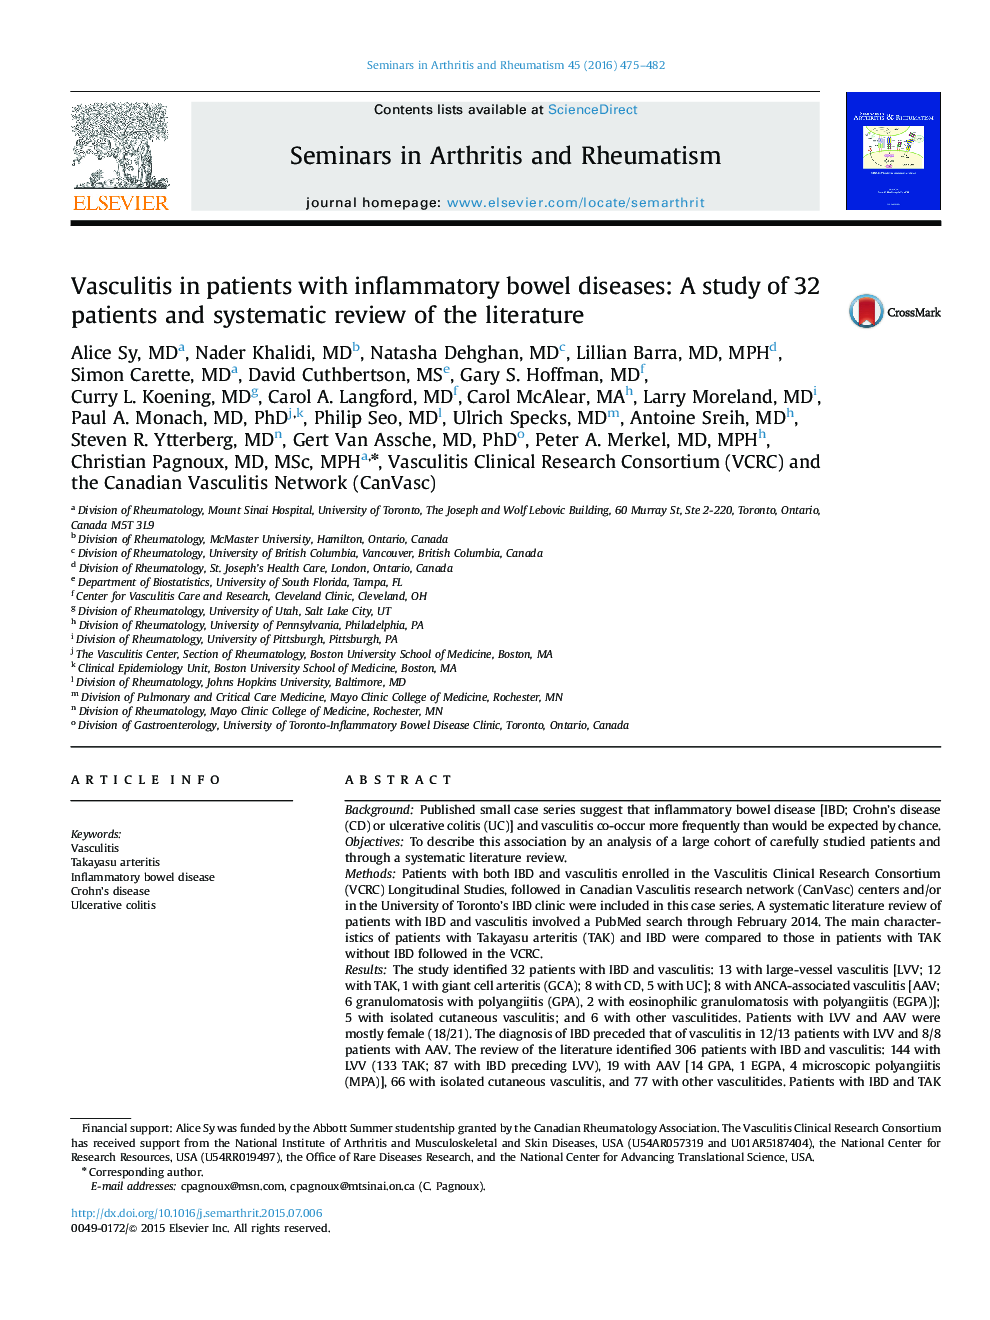 واسکولیت در بیماران مبتلا به بیماری های التهابی روده: مطالعه 32 بیمار و بررسی سیستماتیک ادبیات 